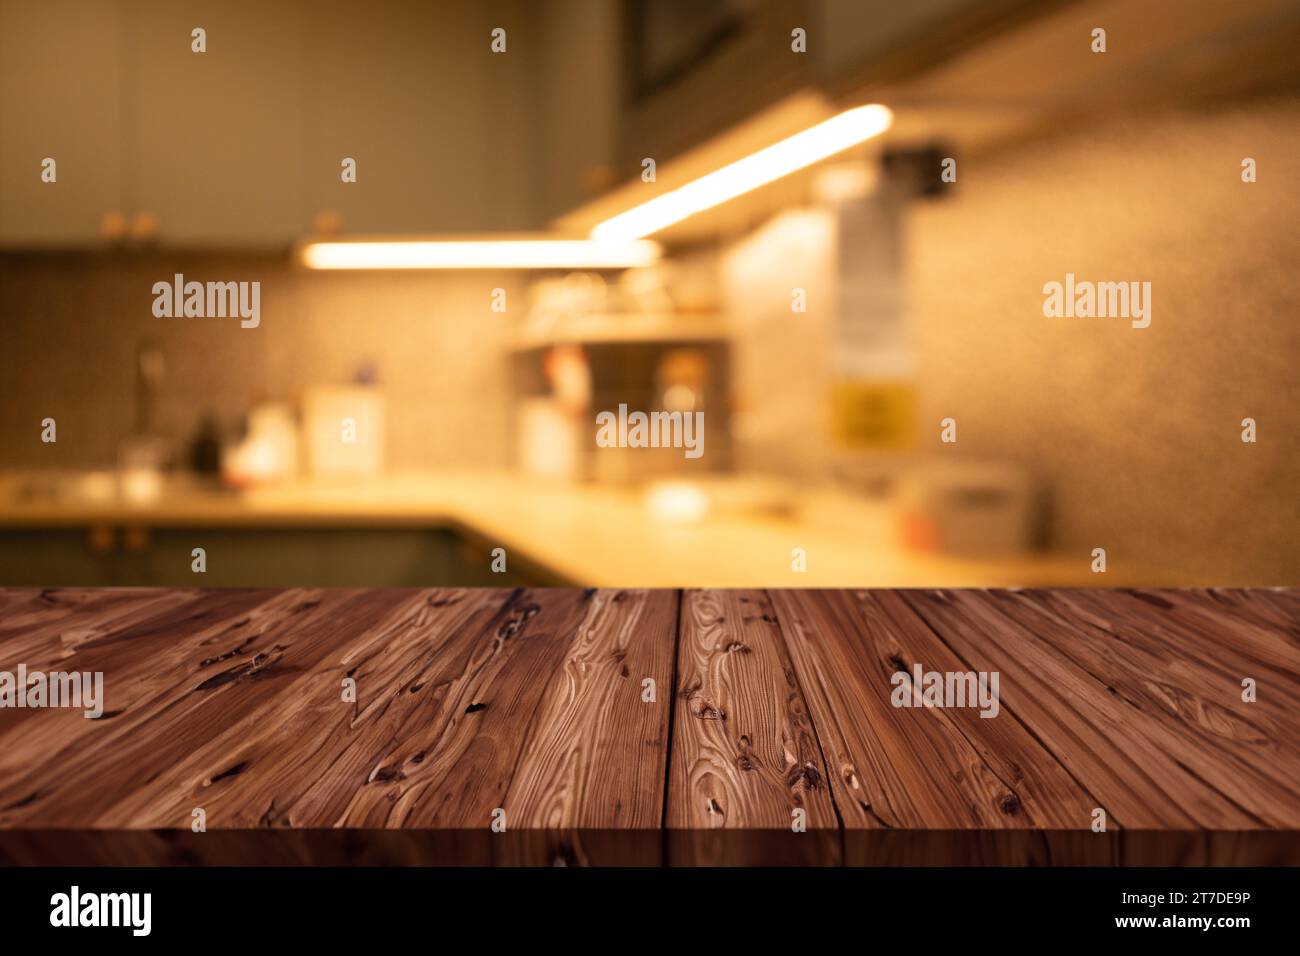 illuminazione soffusa di lusso, moderno piano cucina con spazio vuoto in primo piano in legno per il montaggio dei prodotti Foto Stock